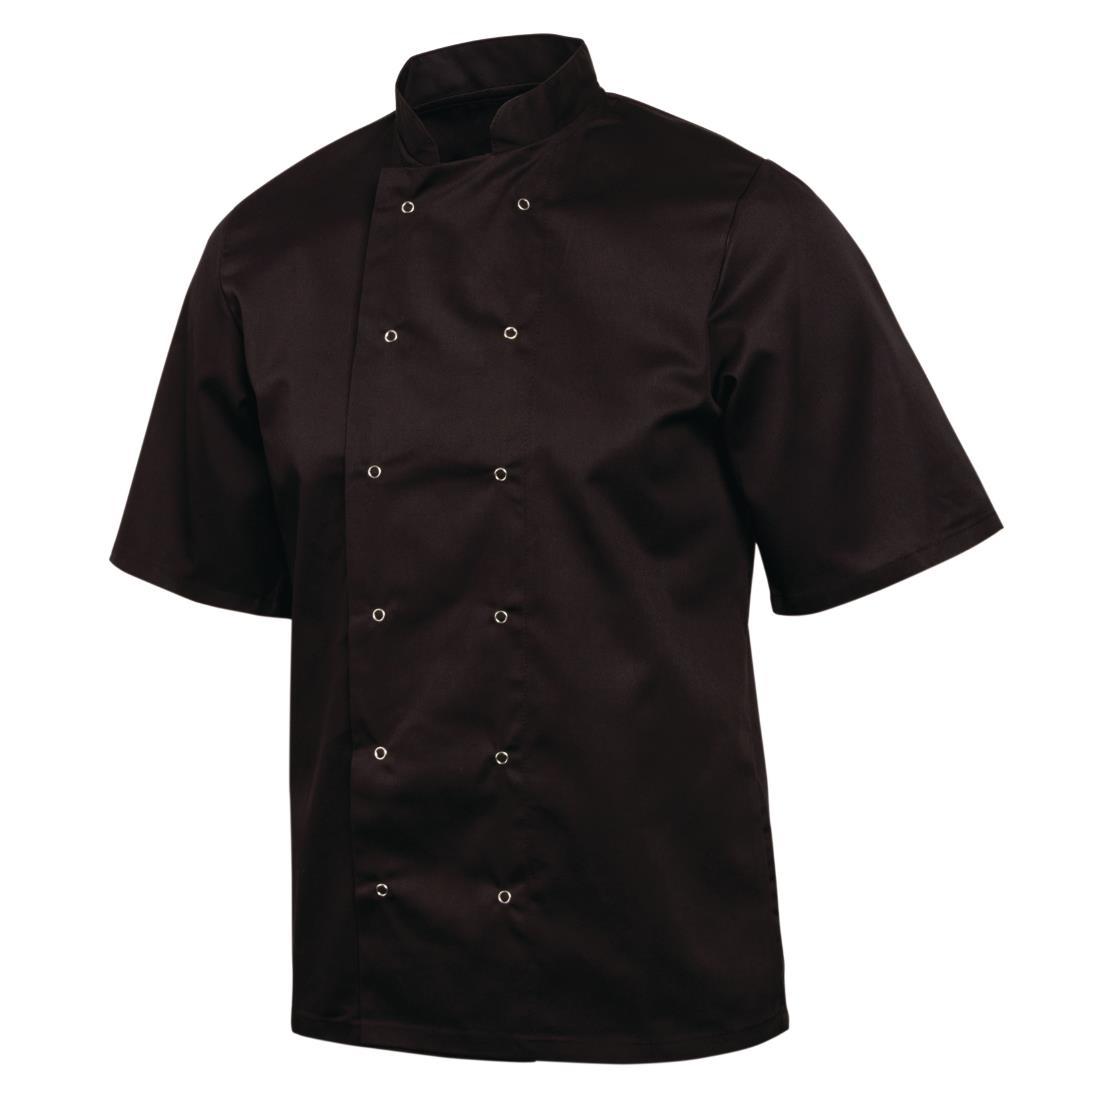 Whites Vegas Unisex Chefs Jacket Short Sleeve Black 3XL - A439-3XL  - 5